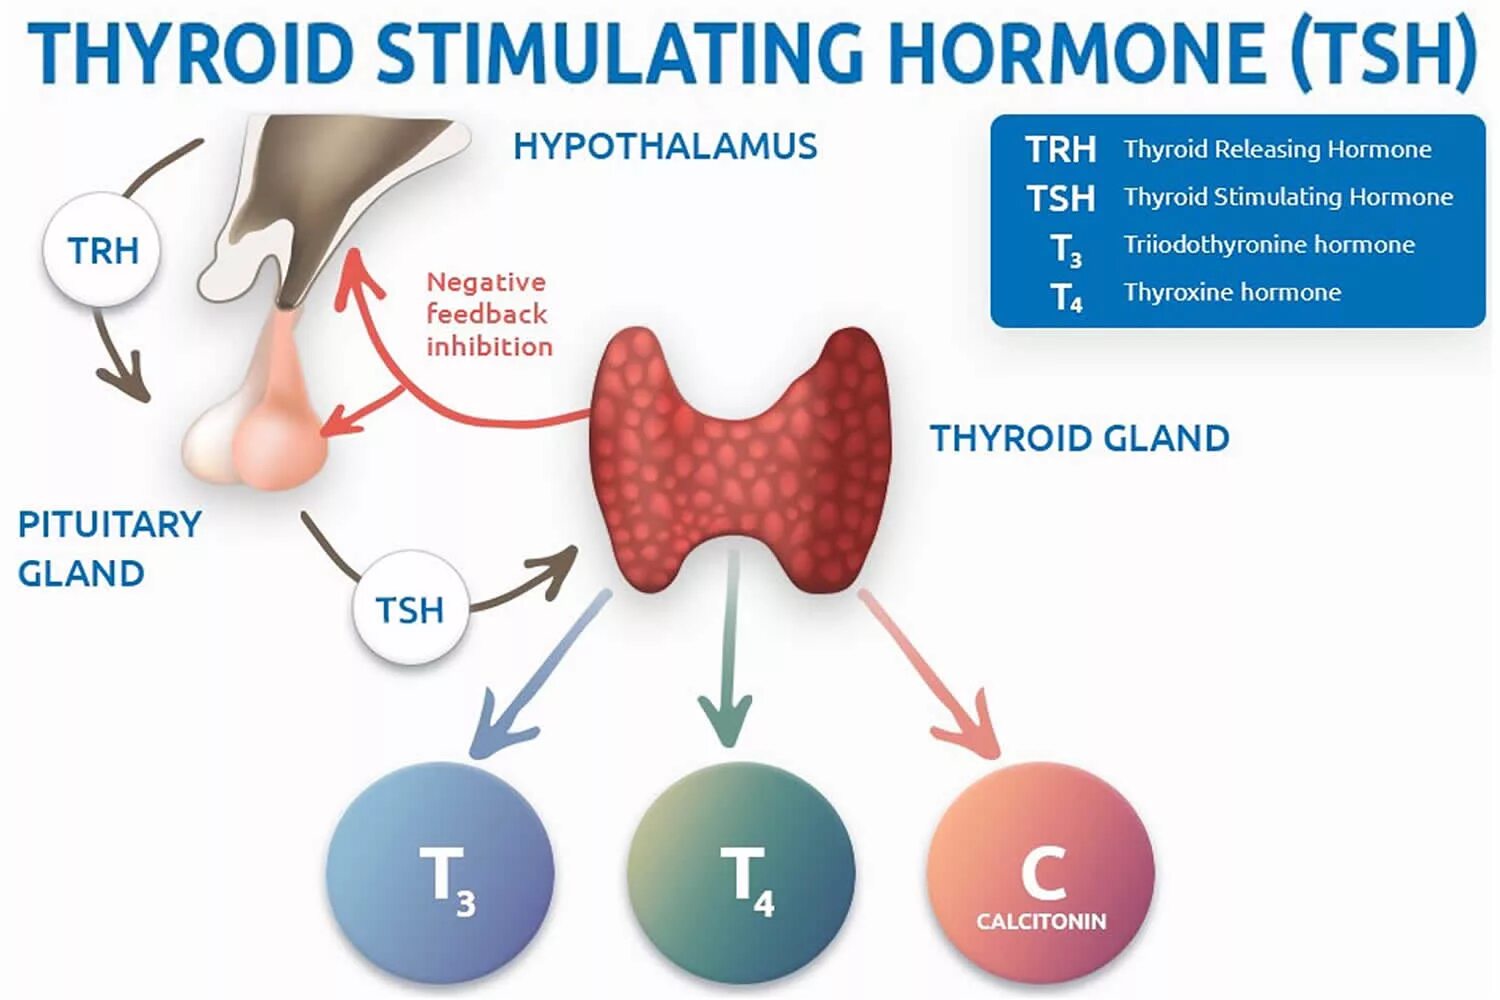 ТТГ гормон 4.60. Гормоны щитовидной железы ТТГ И т4. ТТГ влияет на функцию щитовидной железы по принципу. Тиреотропный гормон вырабатывается гормонов. Тиреотропный гормон гипофиза